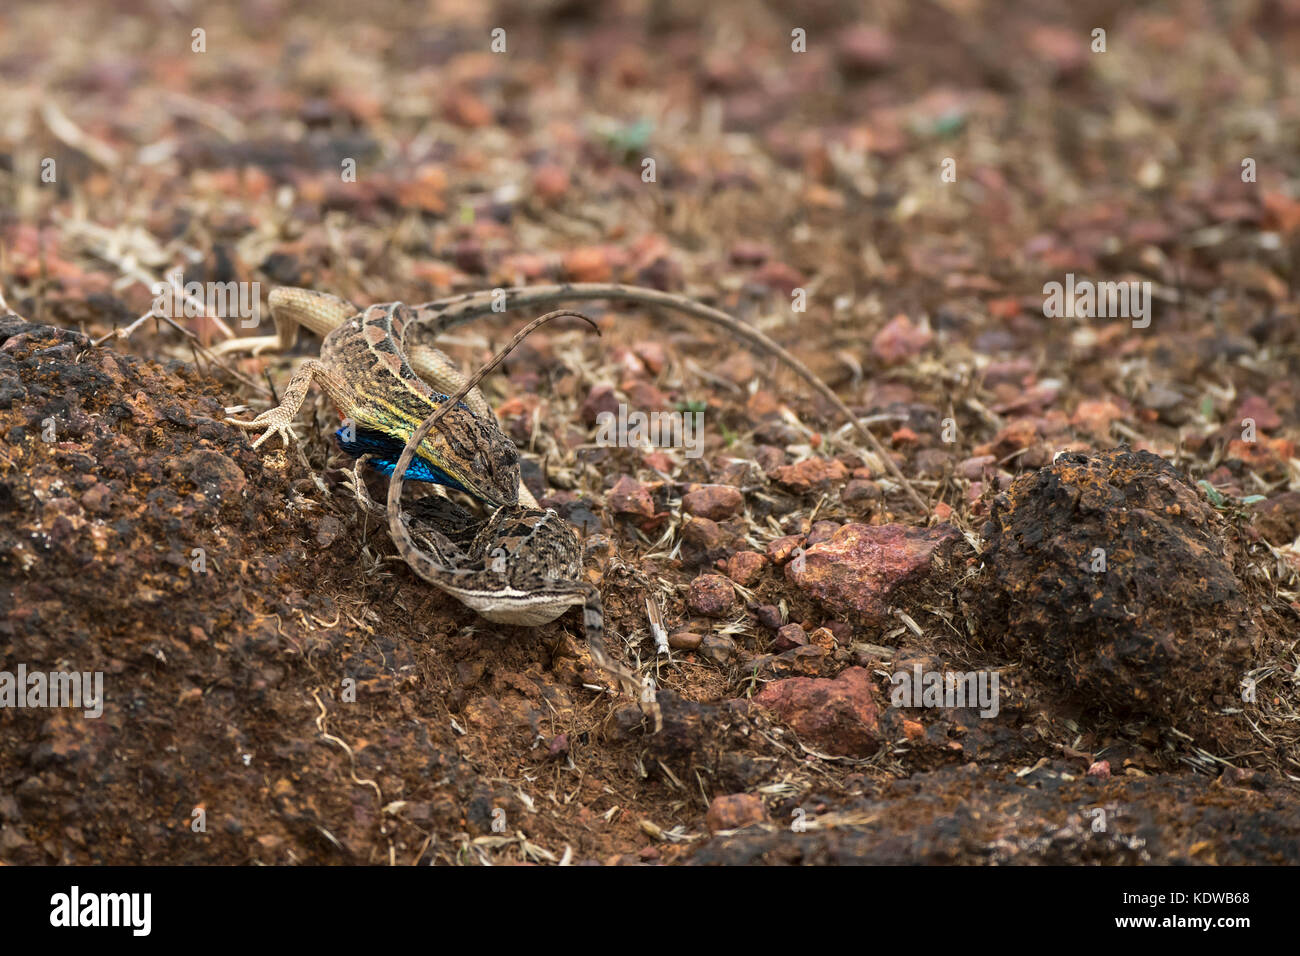 Das Bild der Ventilator throated Lizard (Sitana ponticeriana) Paarungsverhalten wurde in Satara, Maharashtra, Indien genommen Stockfoto